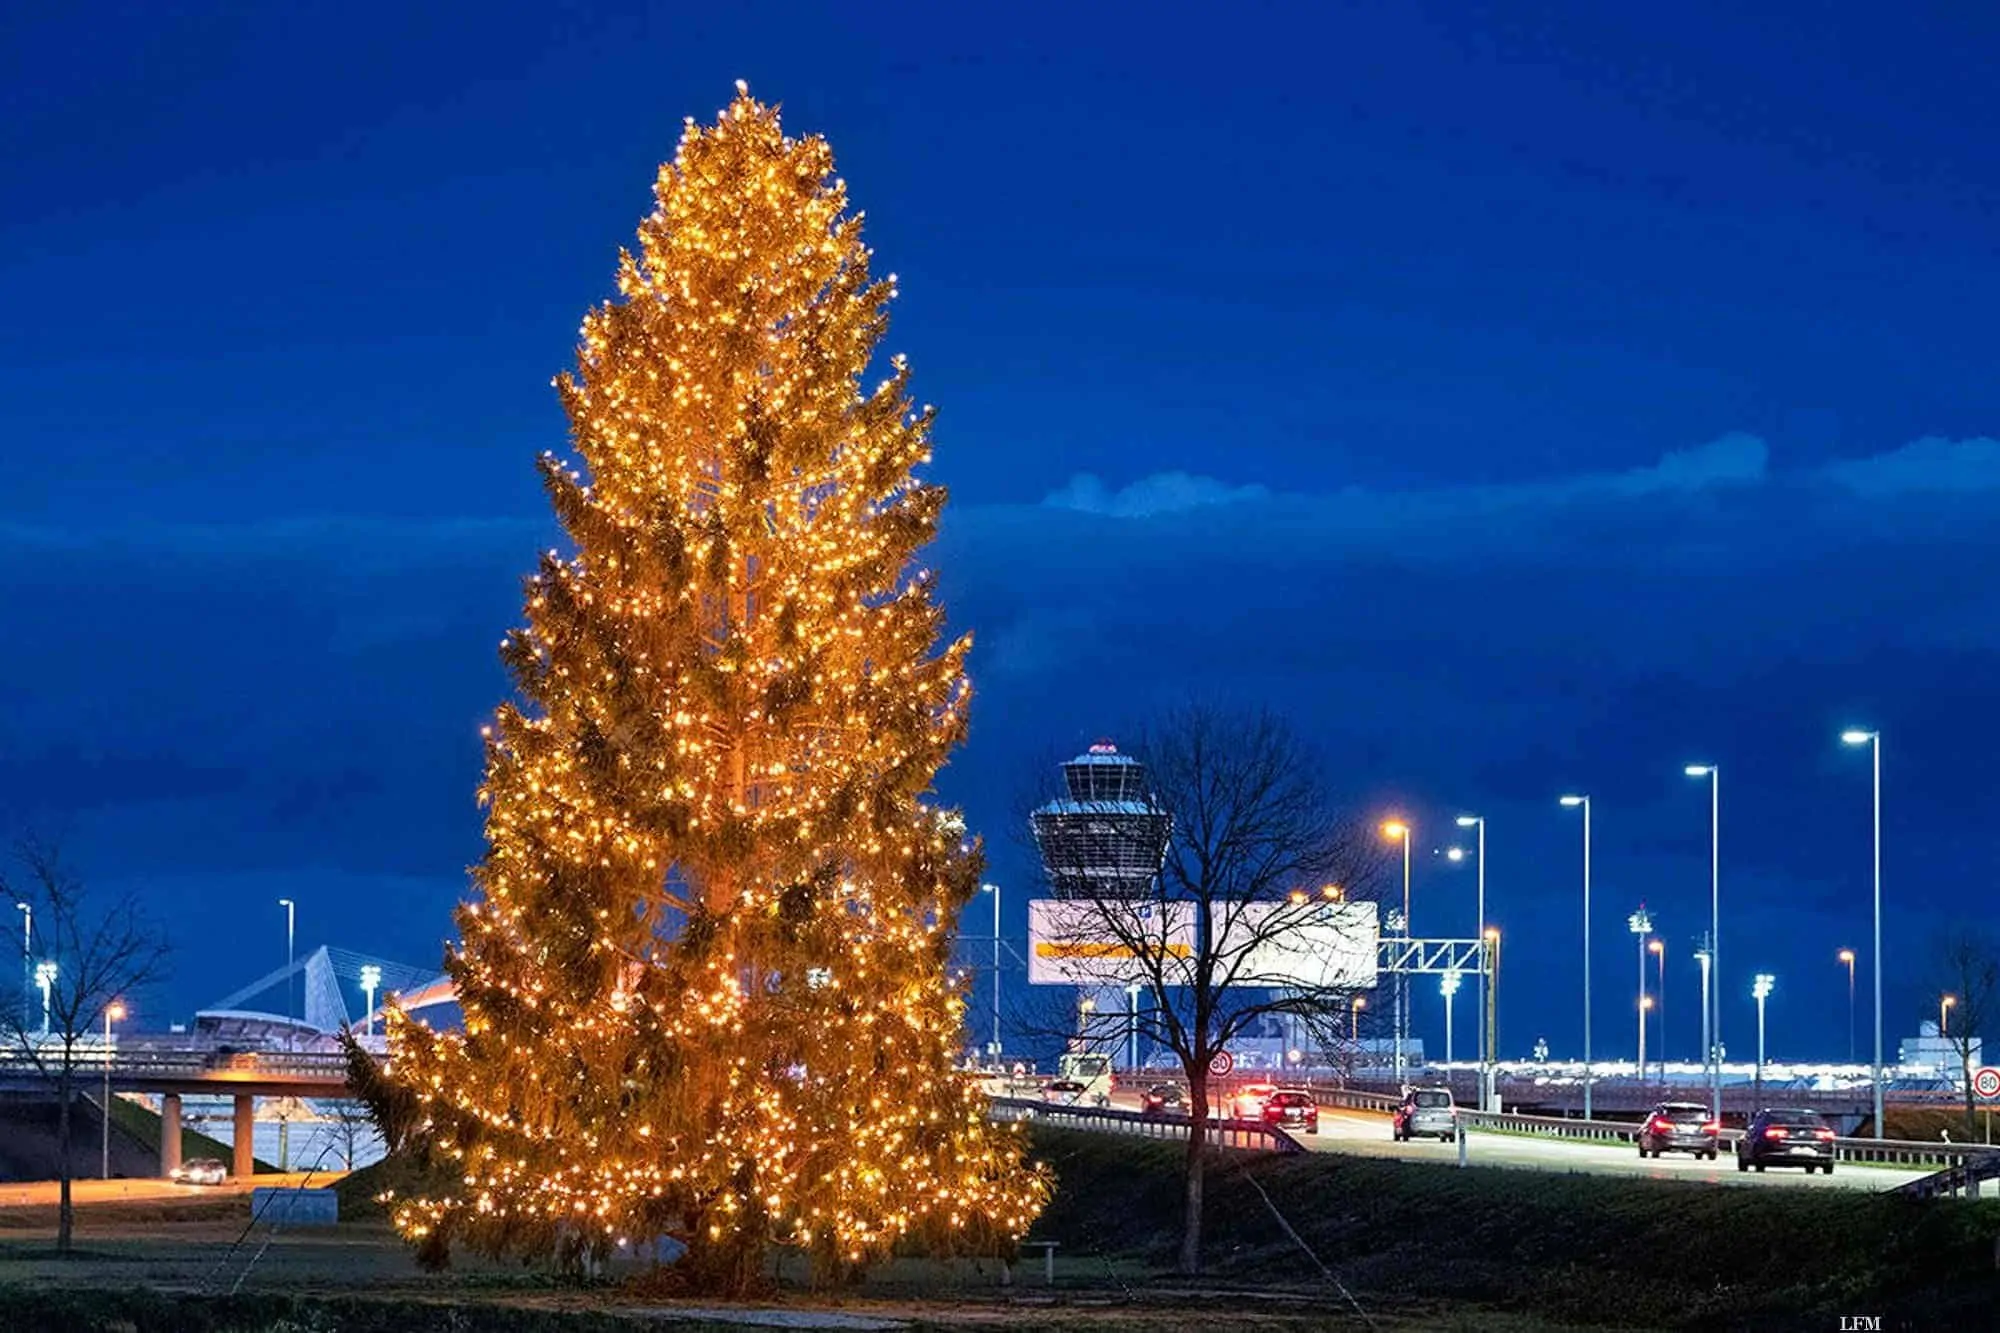 Flughafen München begrüßt mit 19 Meter Weihnachtsbaum